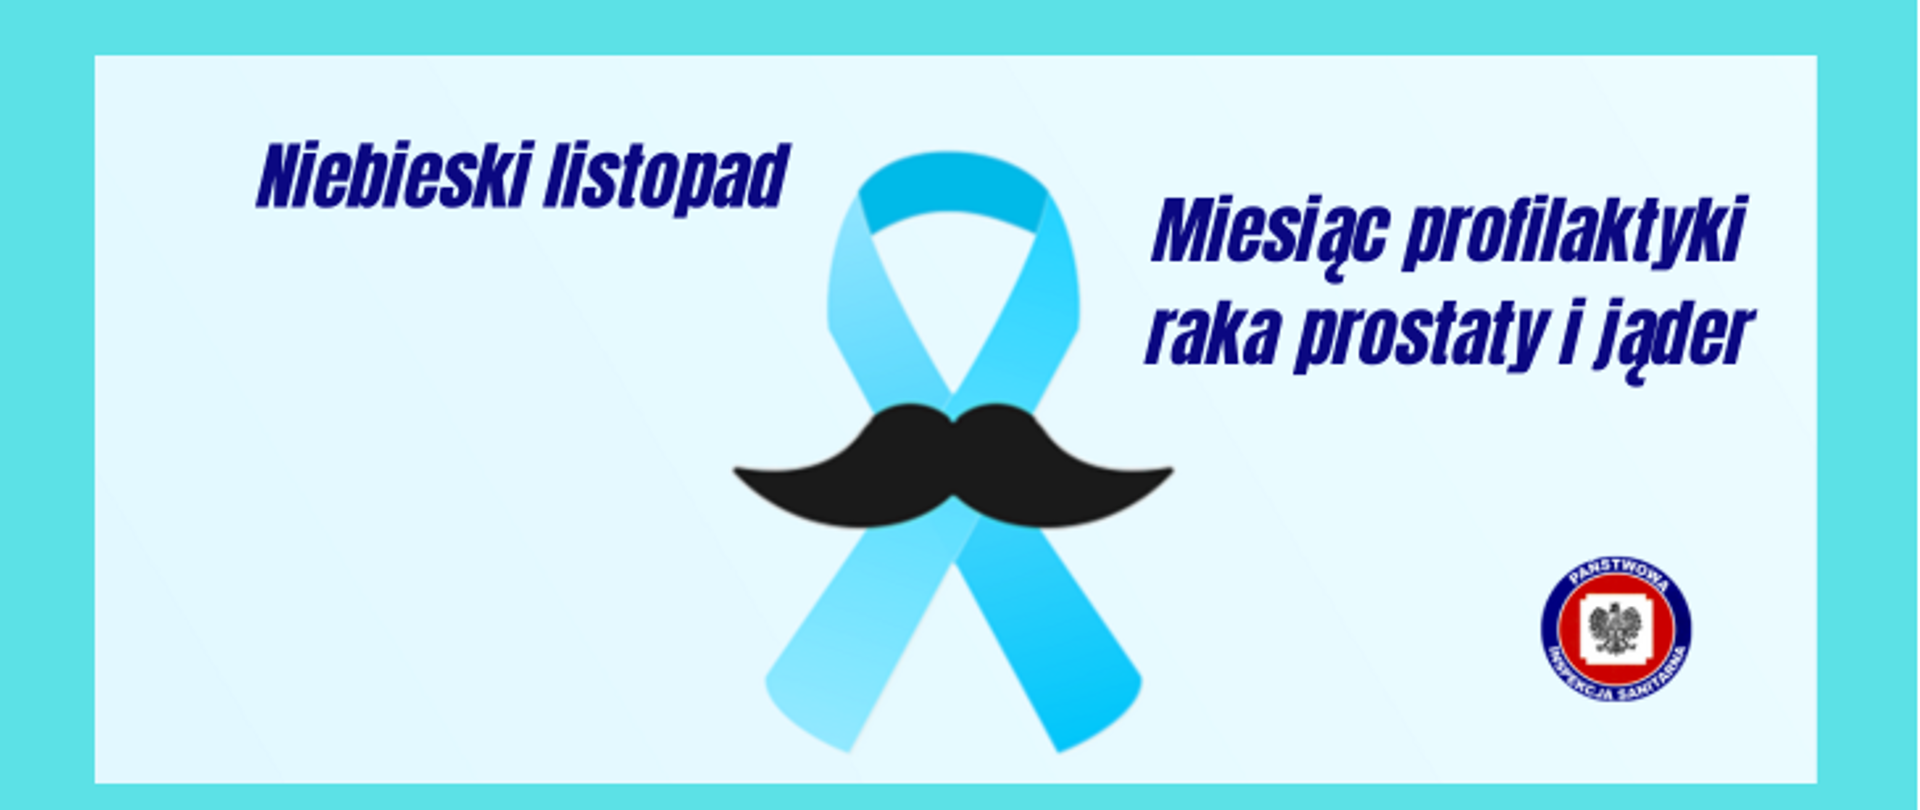 Niebieski listopad - miesiąc profilaktyki raka prostaty i jąder